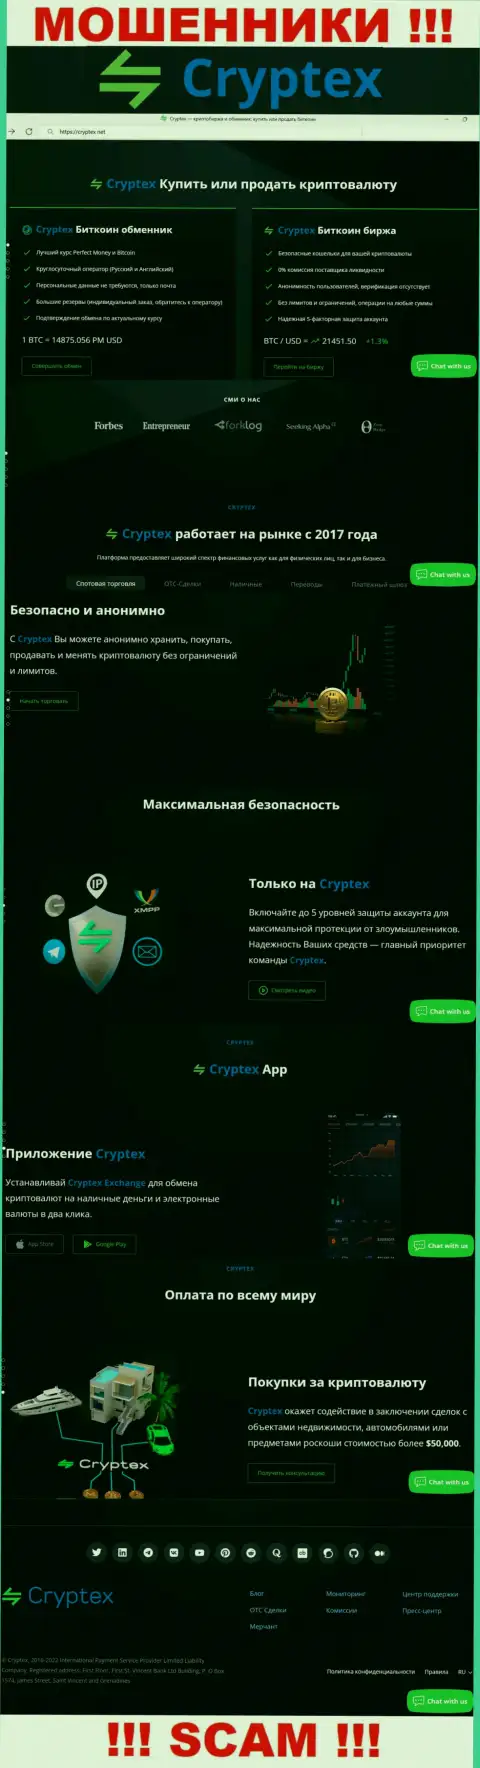 Скриншот официального сервиса противозаконно действующей организации CryptexNet